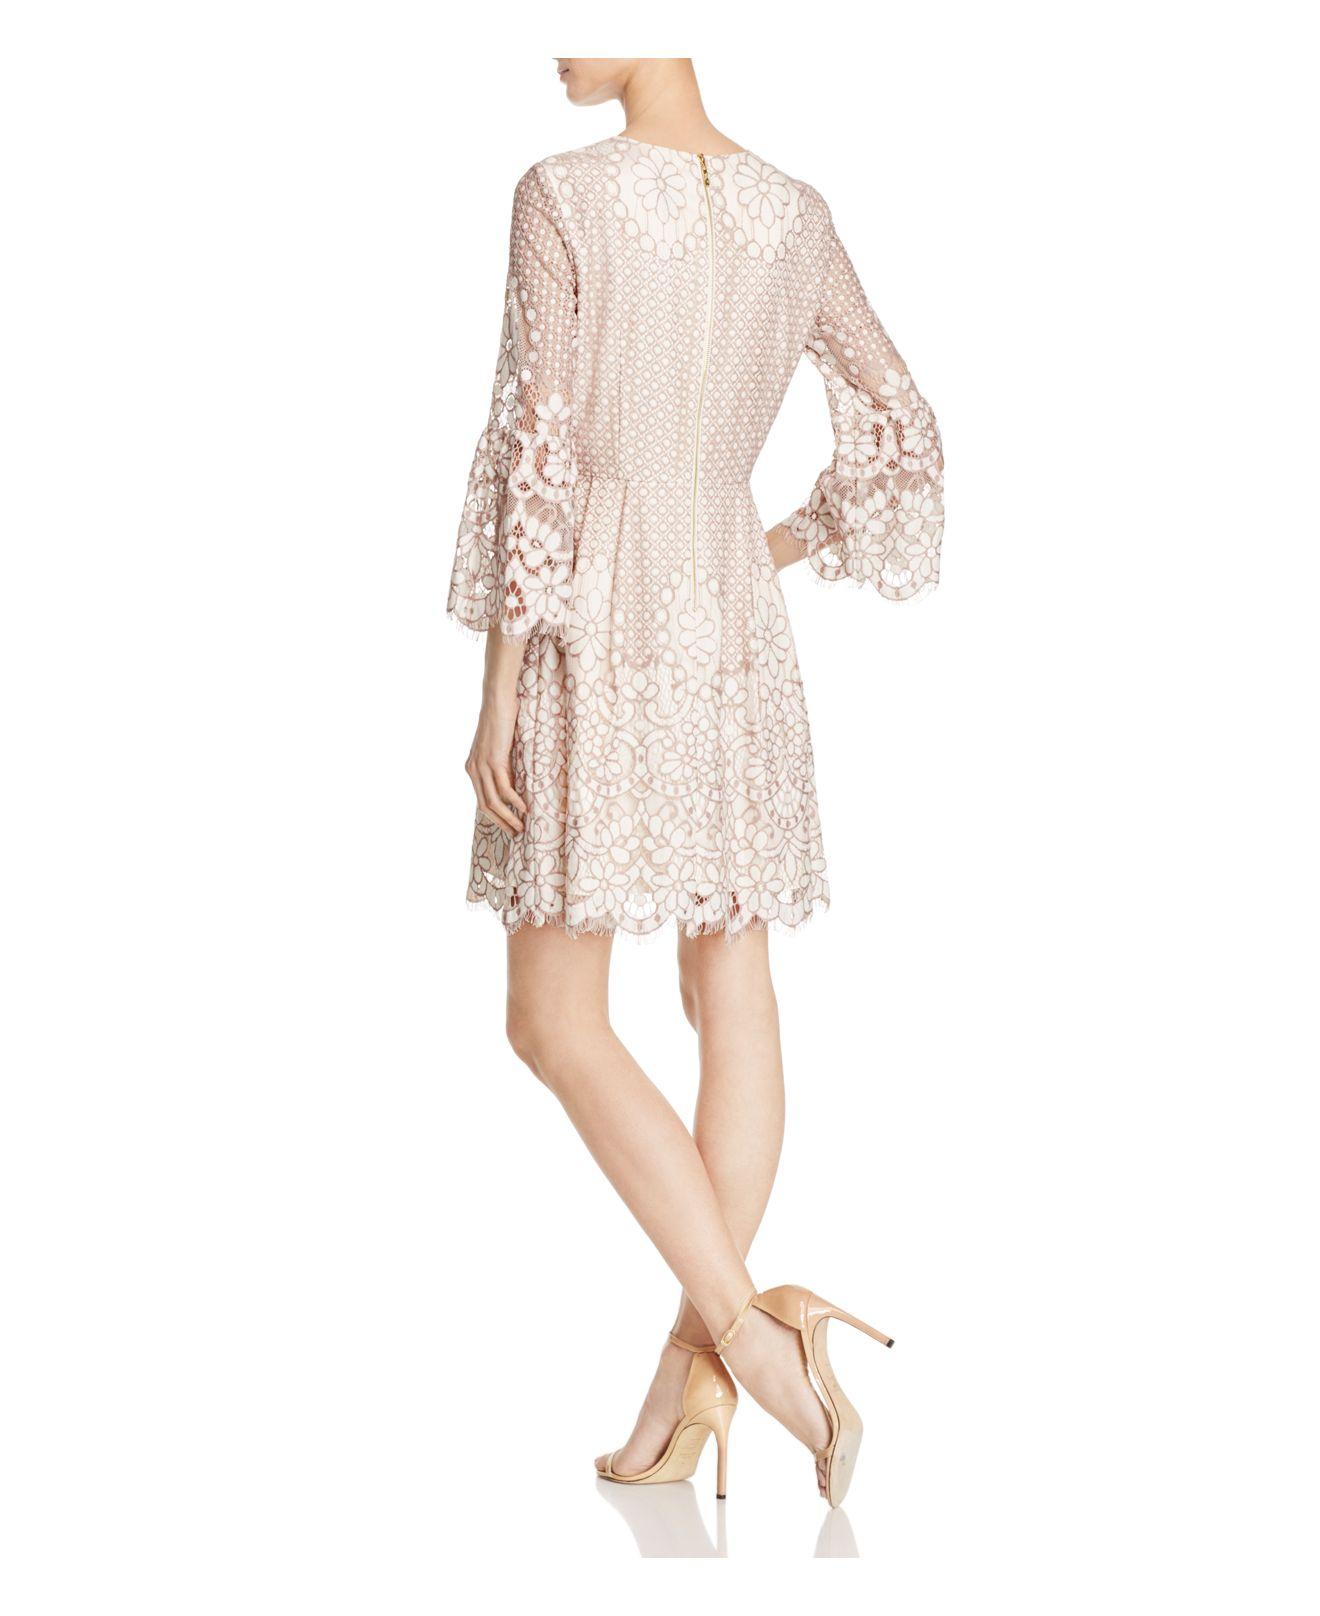 Lyst - Eliza J Bell-sleeve Lace Dress in White